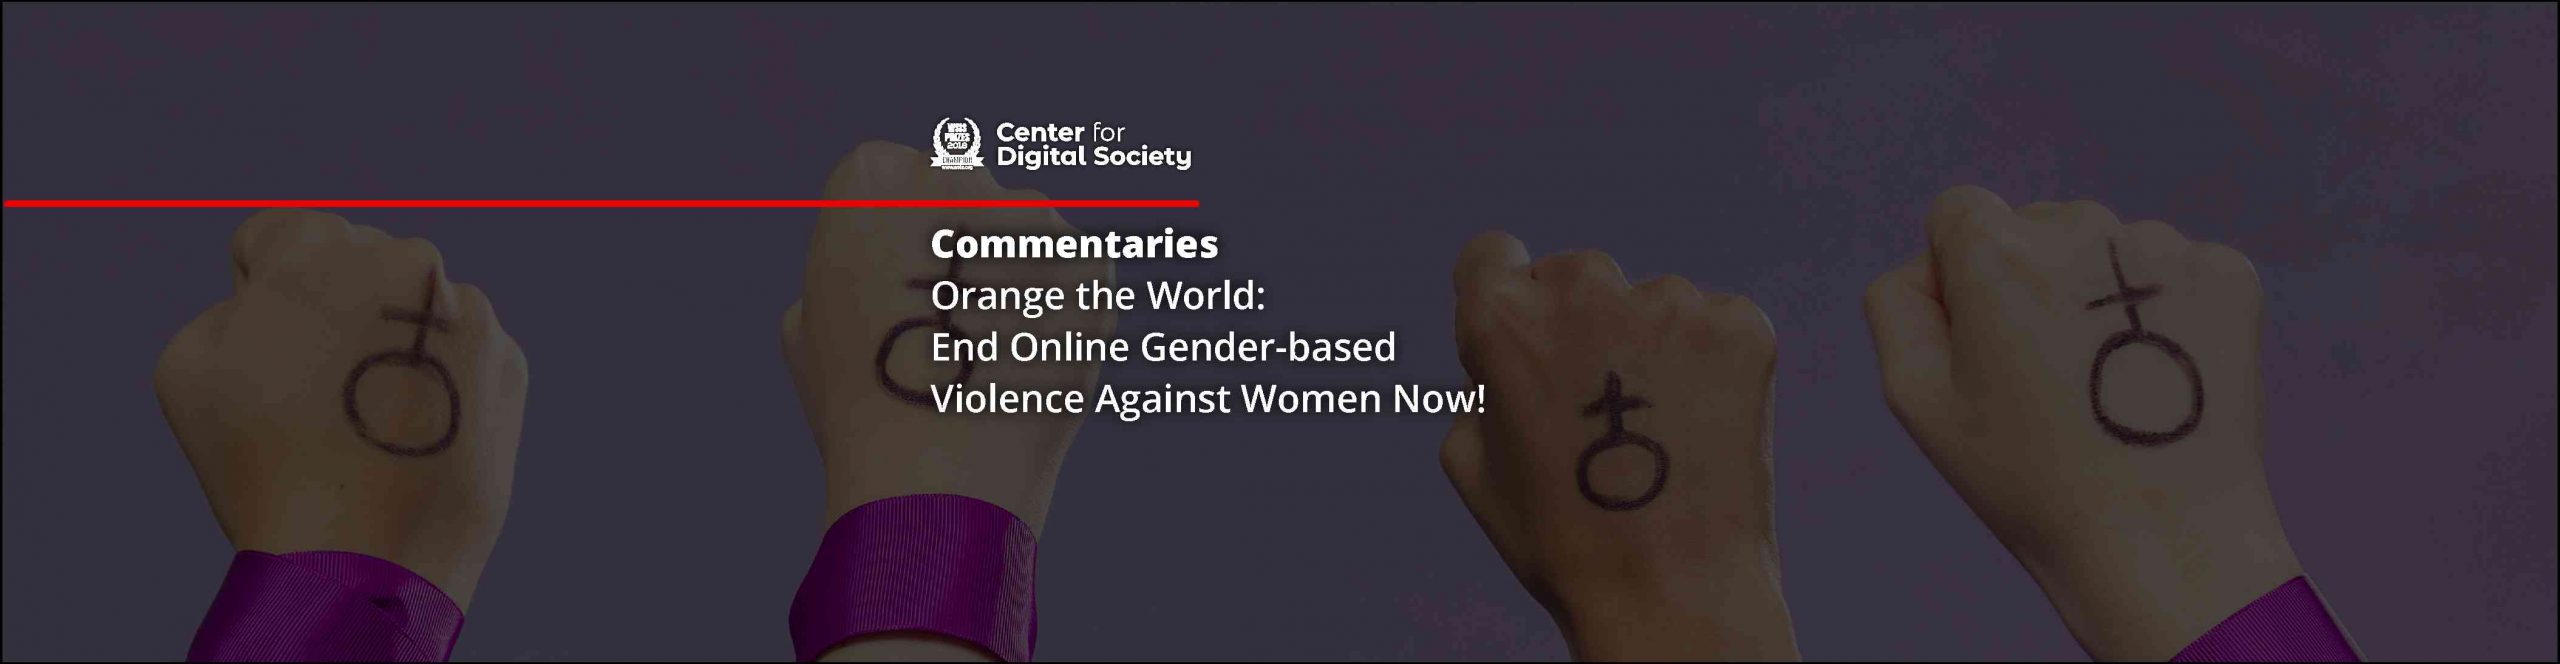 Orange the World: End Online Gender-based Violence Against Women Now!